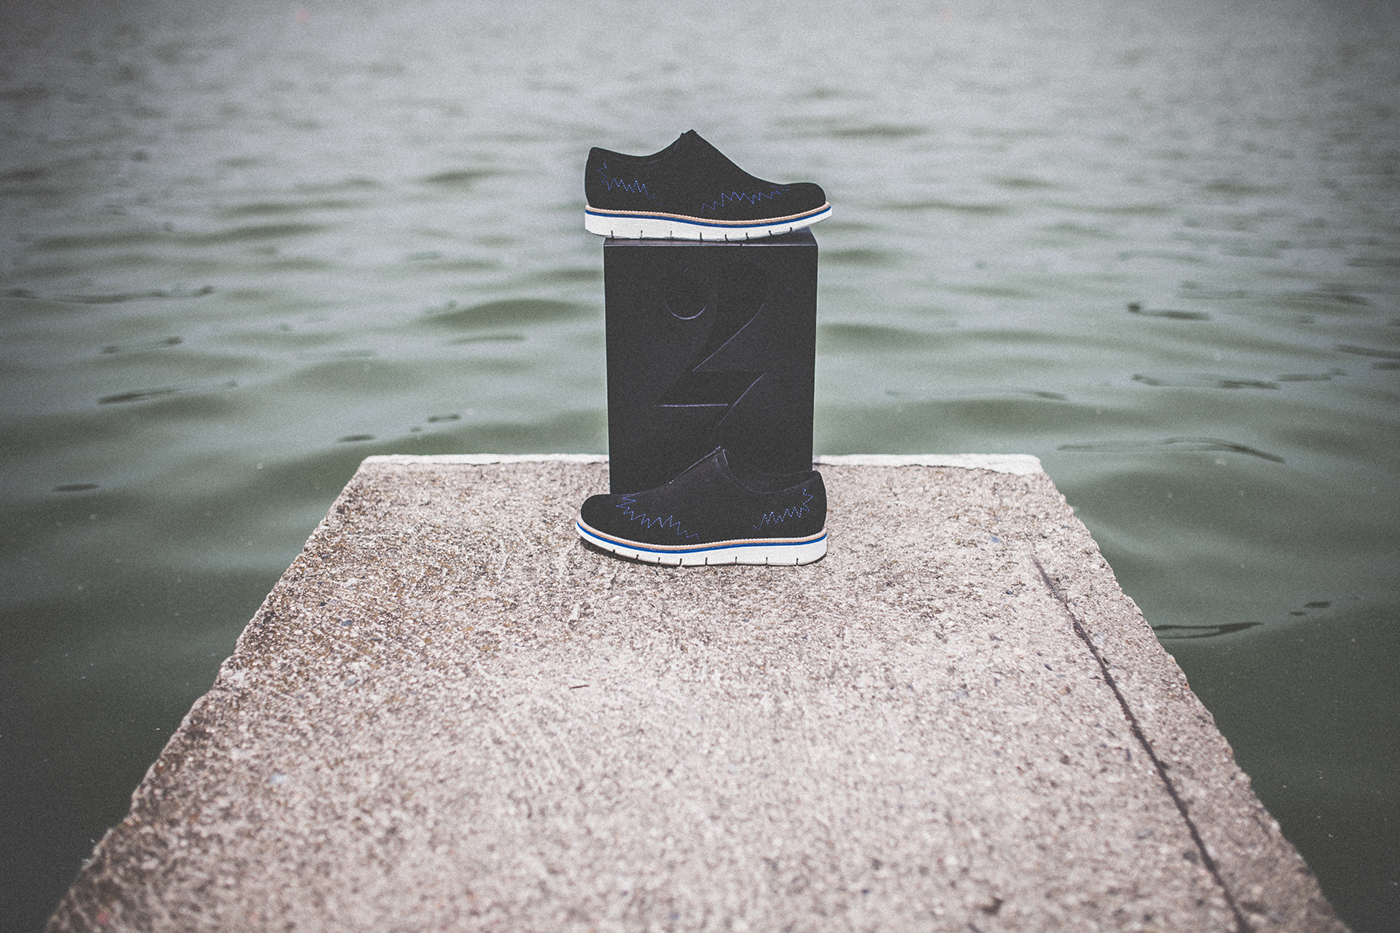 footwear photo art observation sea berlin water dark black silence shoes